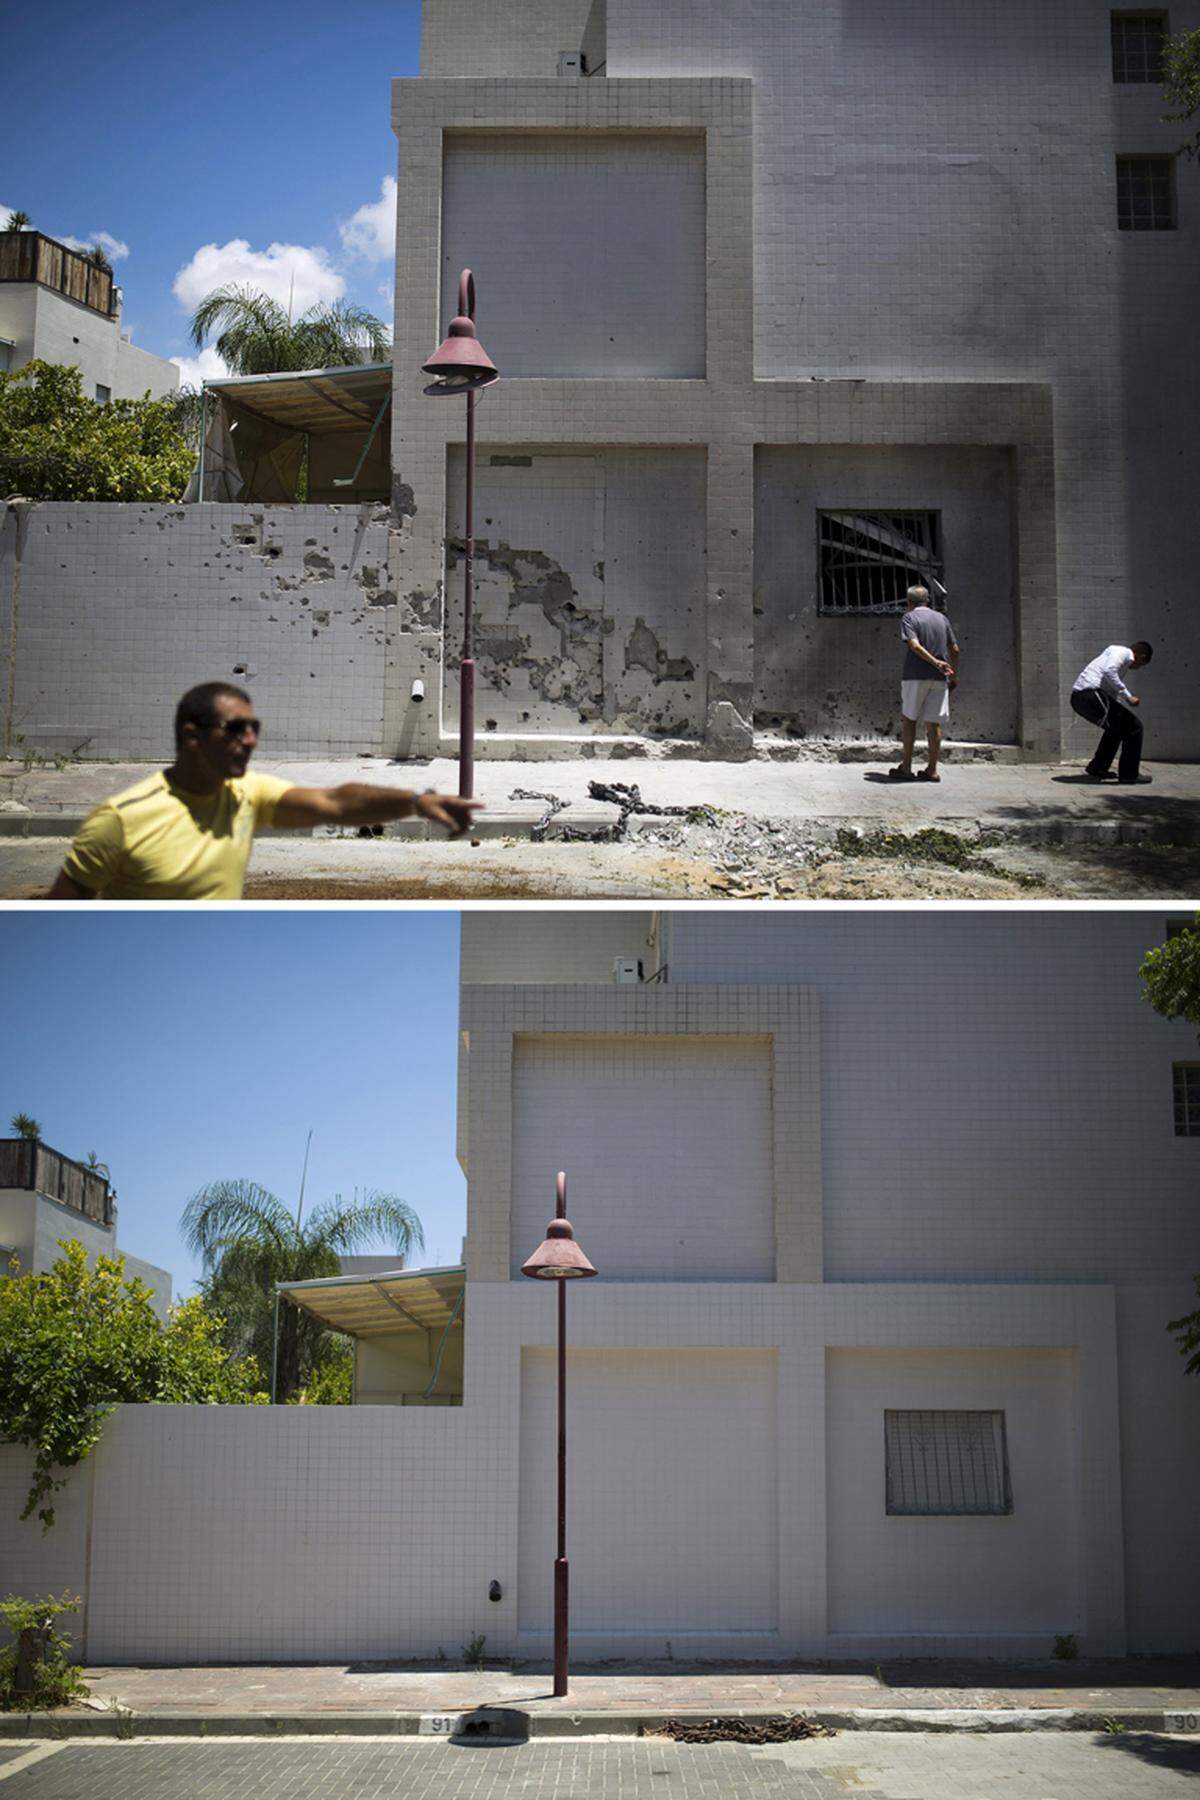 Die Raketenspuren in Ashdod in Israel sind ein Jahr nach dem Krieg beseitigt, zu mindest auf dieser Häuserwand. Die Sorge vor einem erneuten Konflikt ist groß. Israel vermutet zwei Staatsbürger als Geiseln im Gazastreifen.